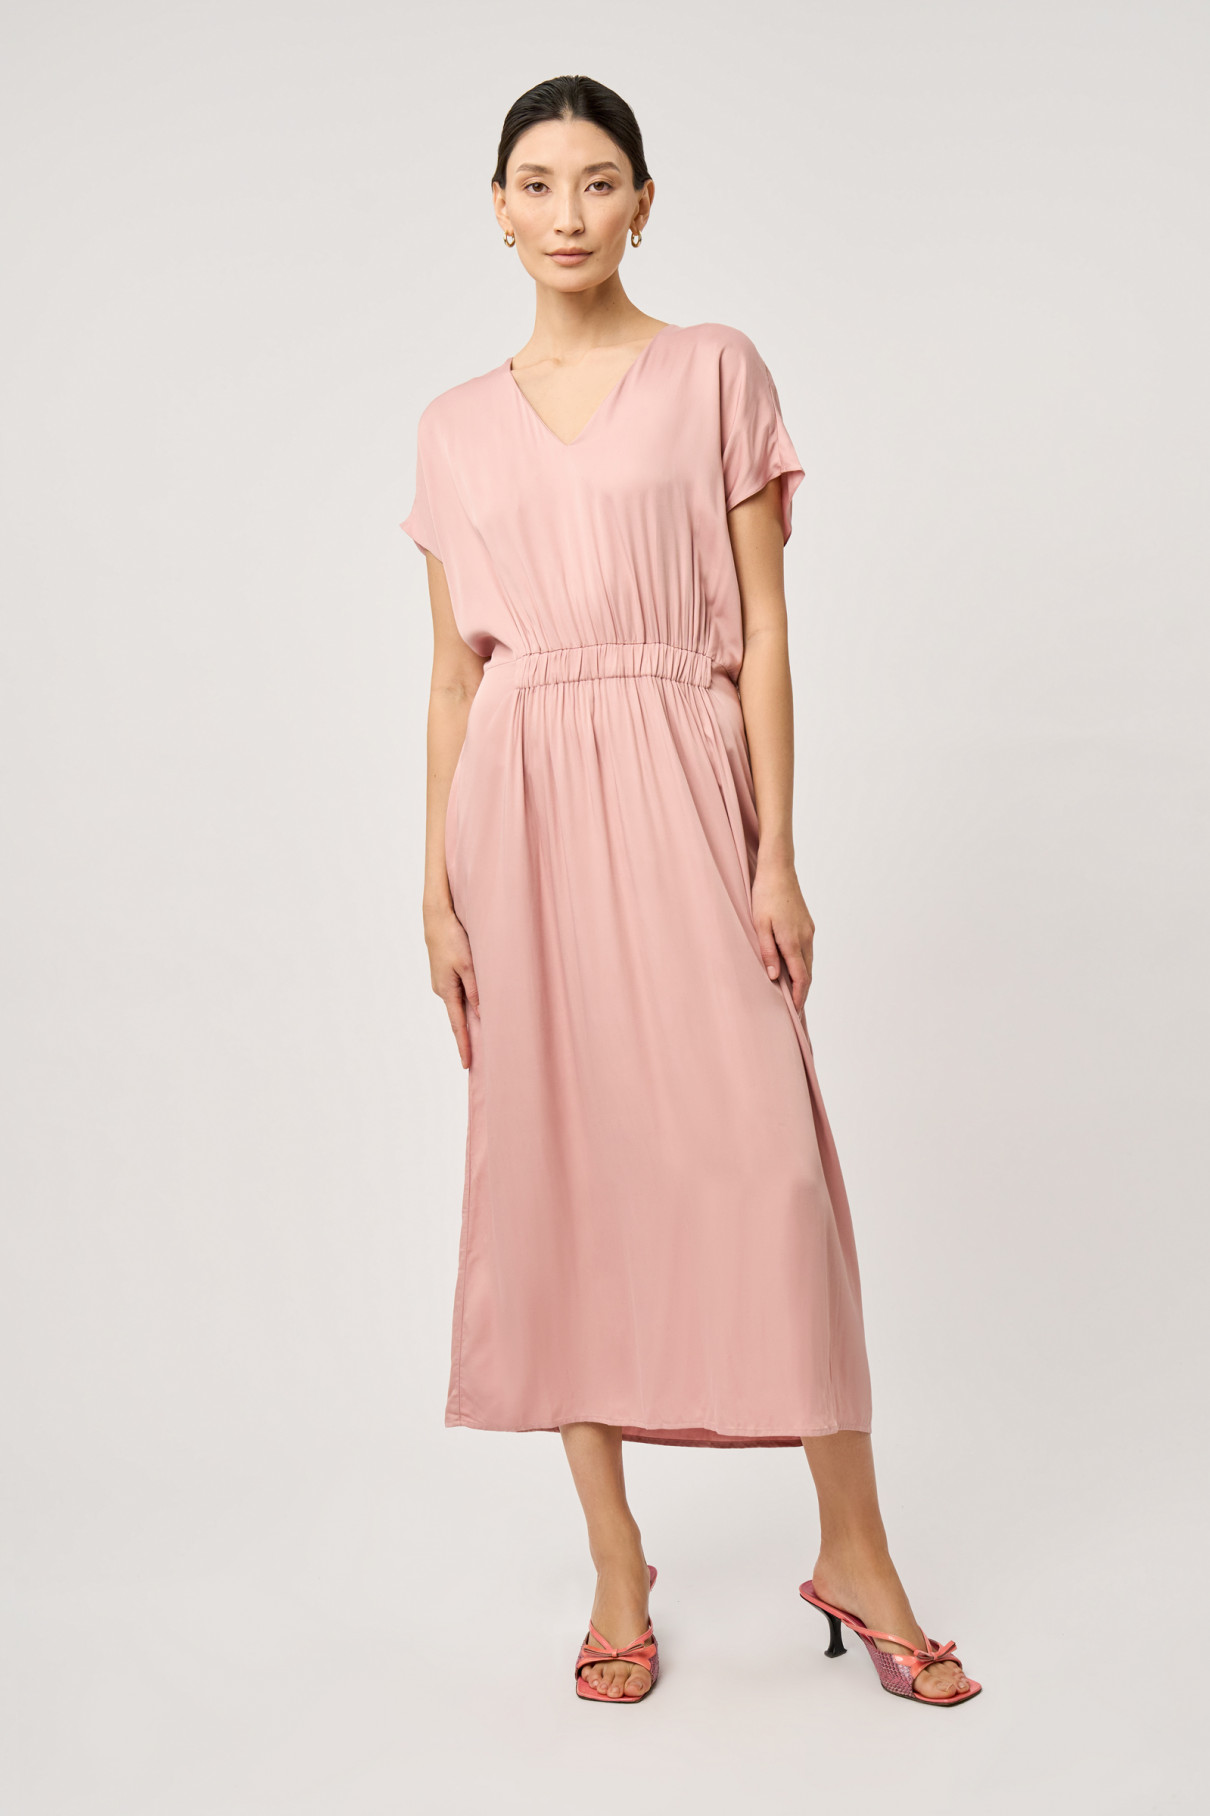 Платье на резинке розовое , арт. FR20-ПУ-1-пд-4 купить в интернет-магазине